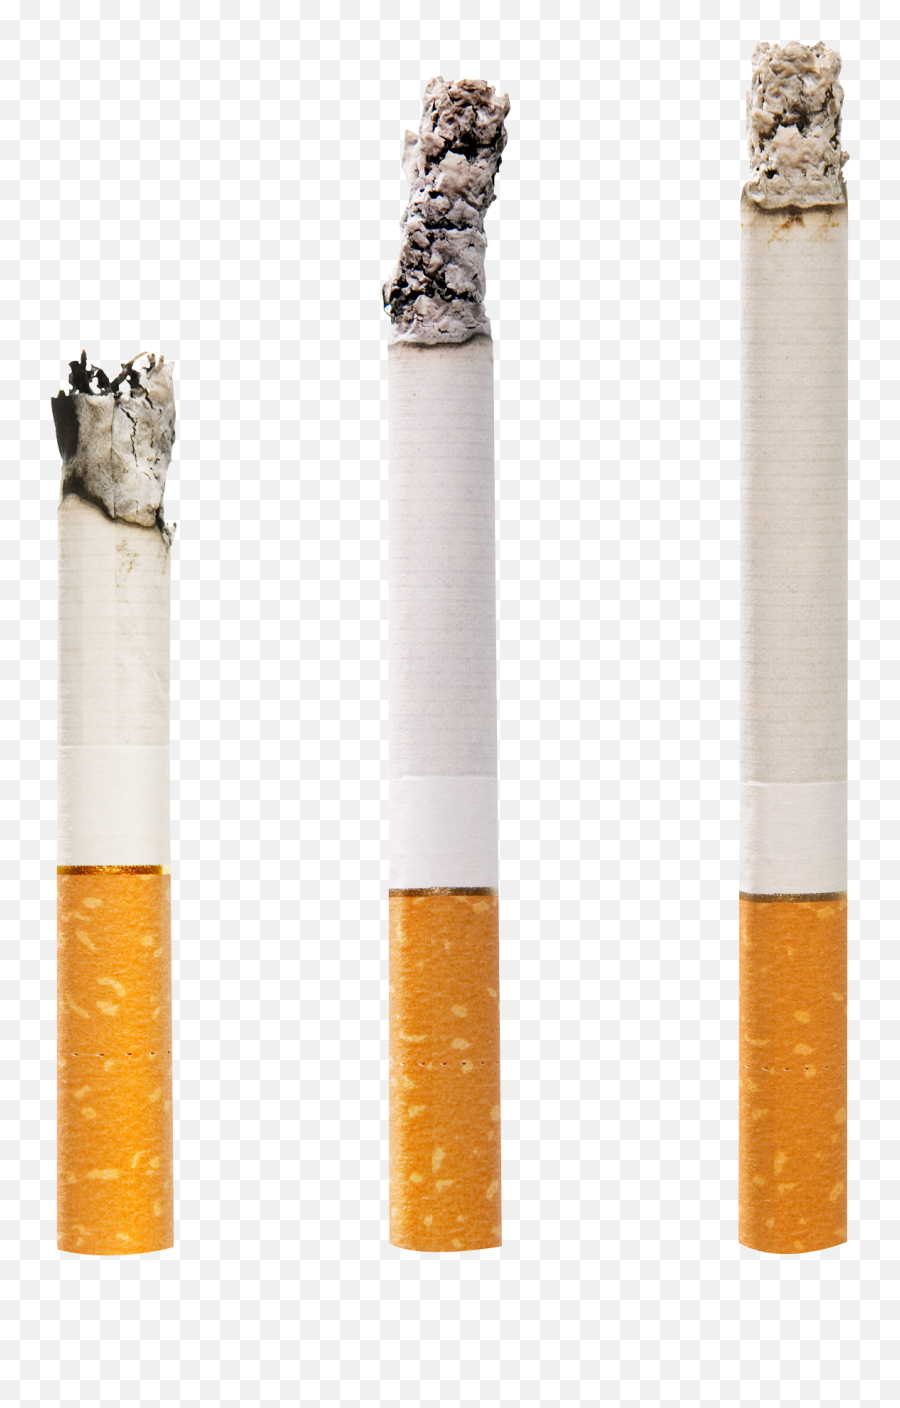 Cigarettes Png Image - Cigarettes Png,Cigarettes Png